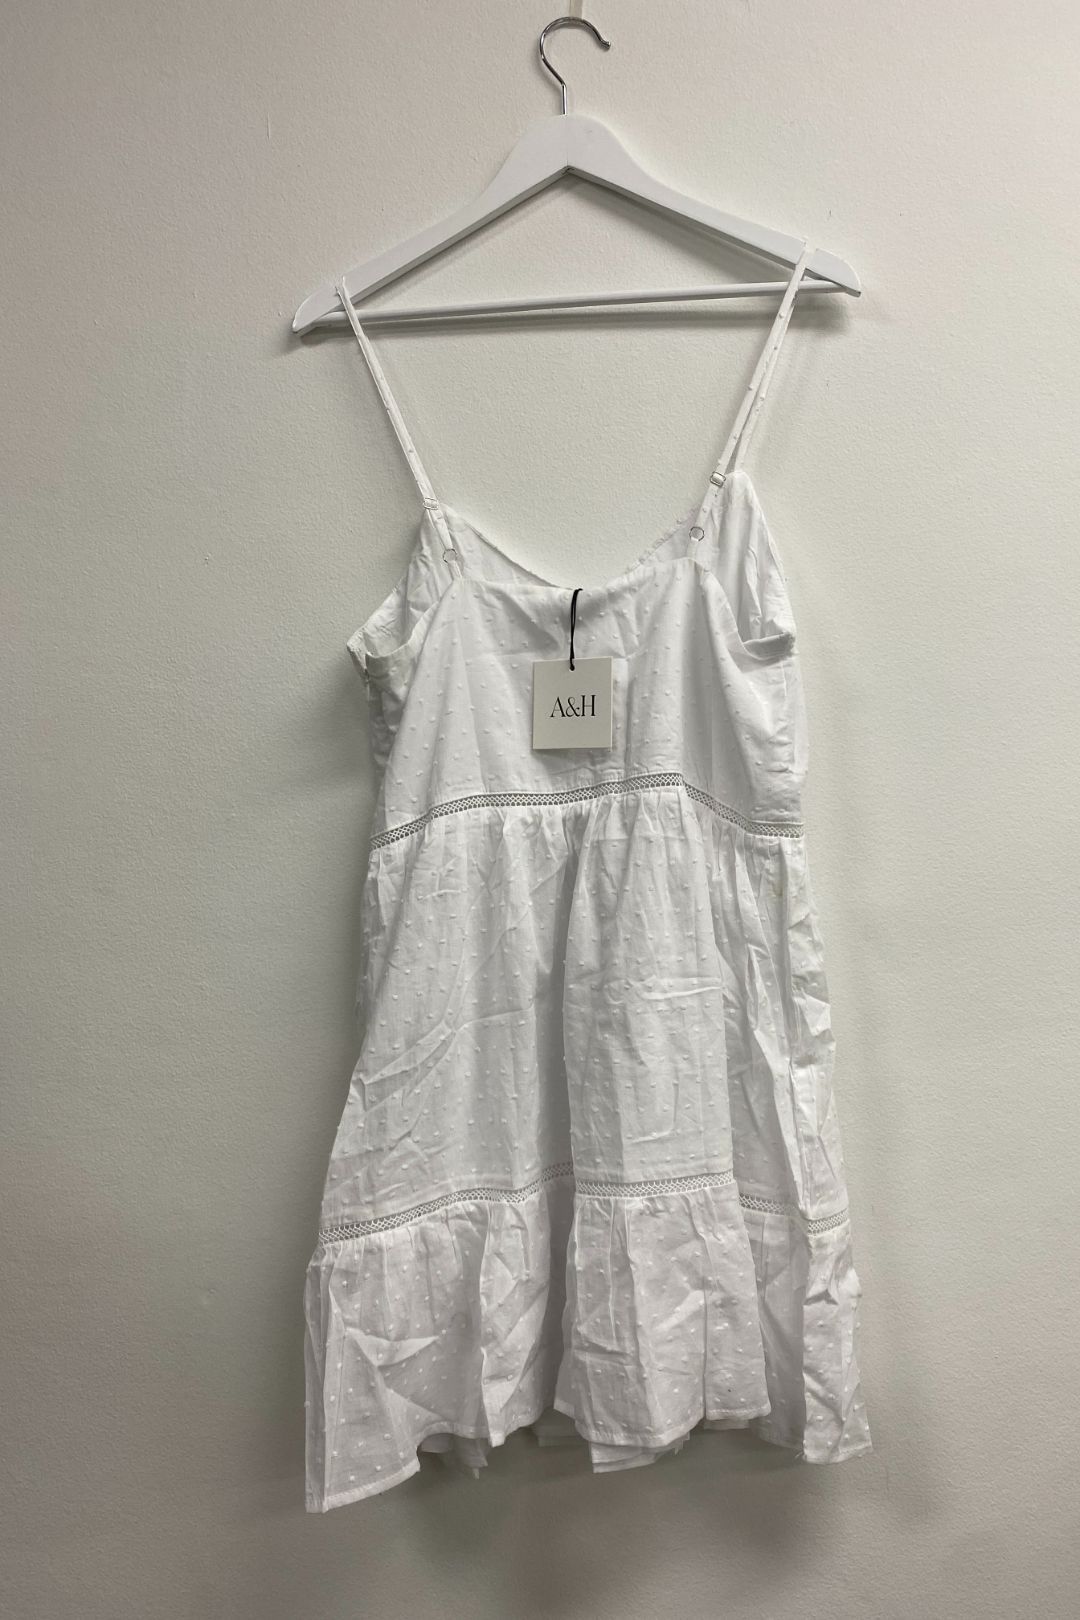 Atmos&here - Cotton Mini Dress